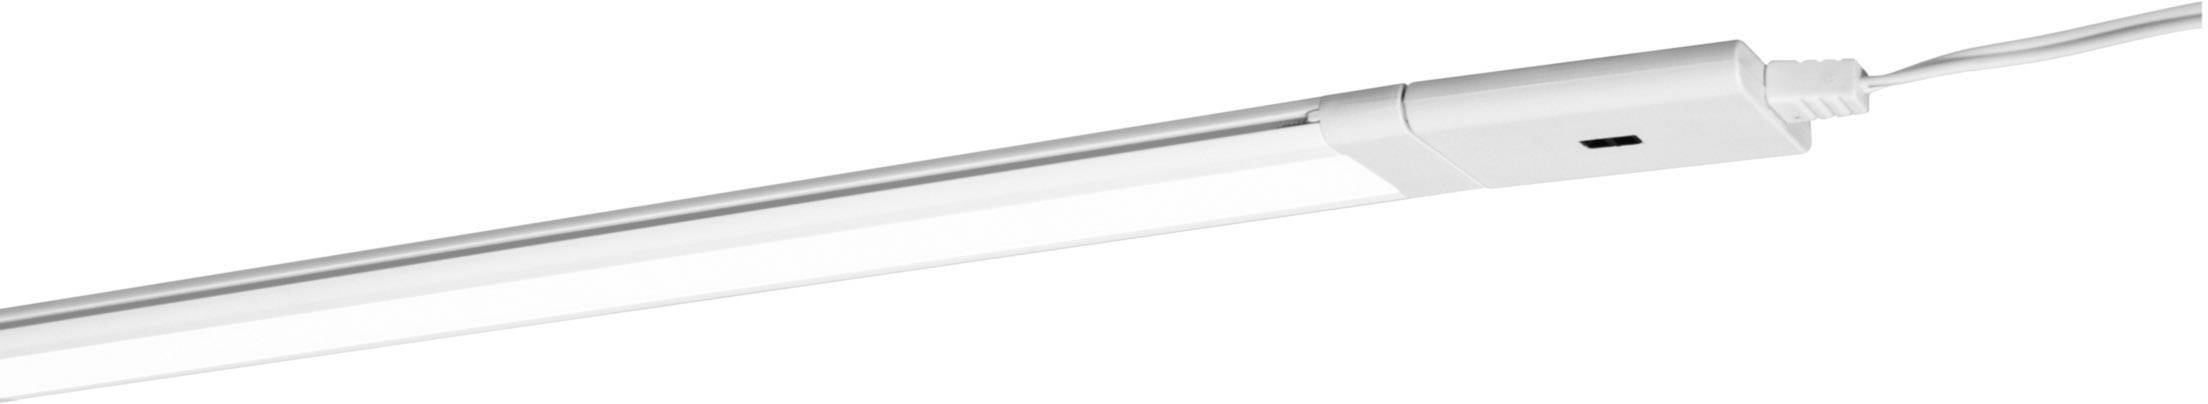 LEDVANCE 4058075227736 CABINET LED Slim LED-Unterbauleuchte mit Bewegungsmelder EEK: LED (A++ -